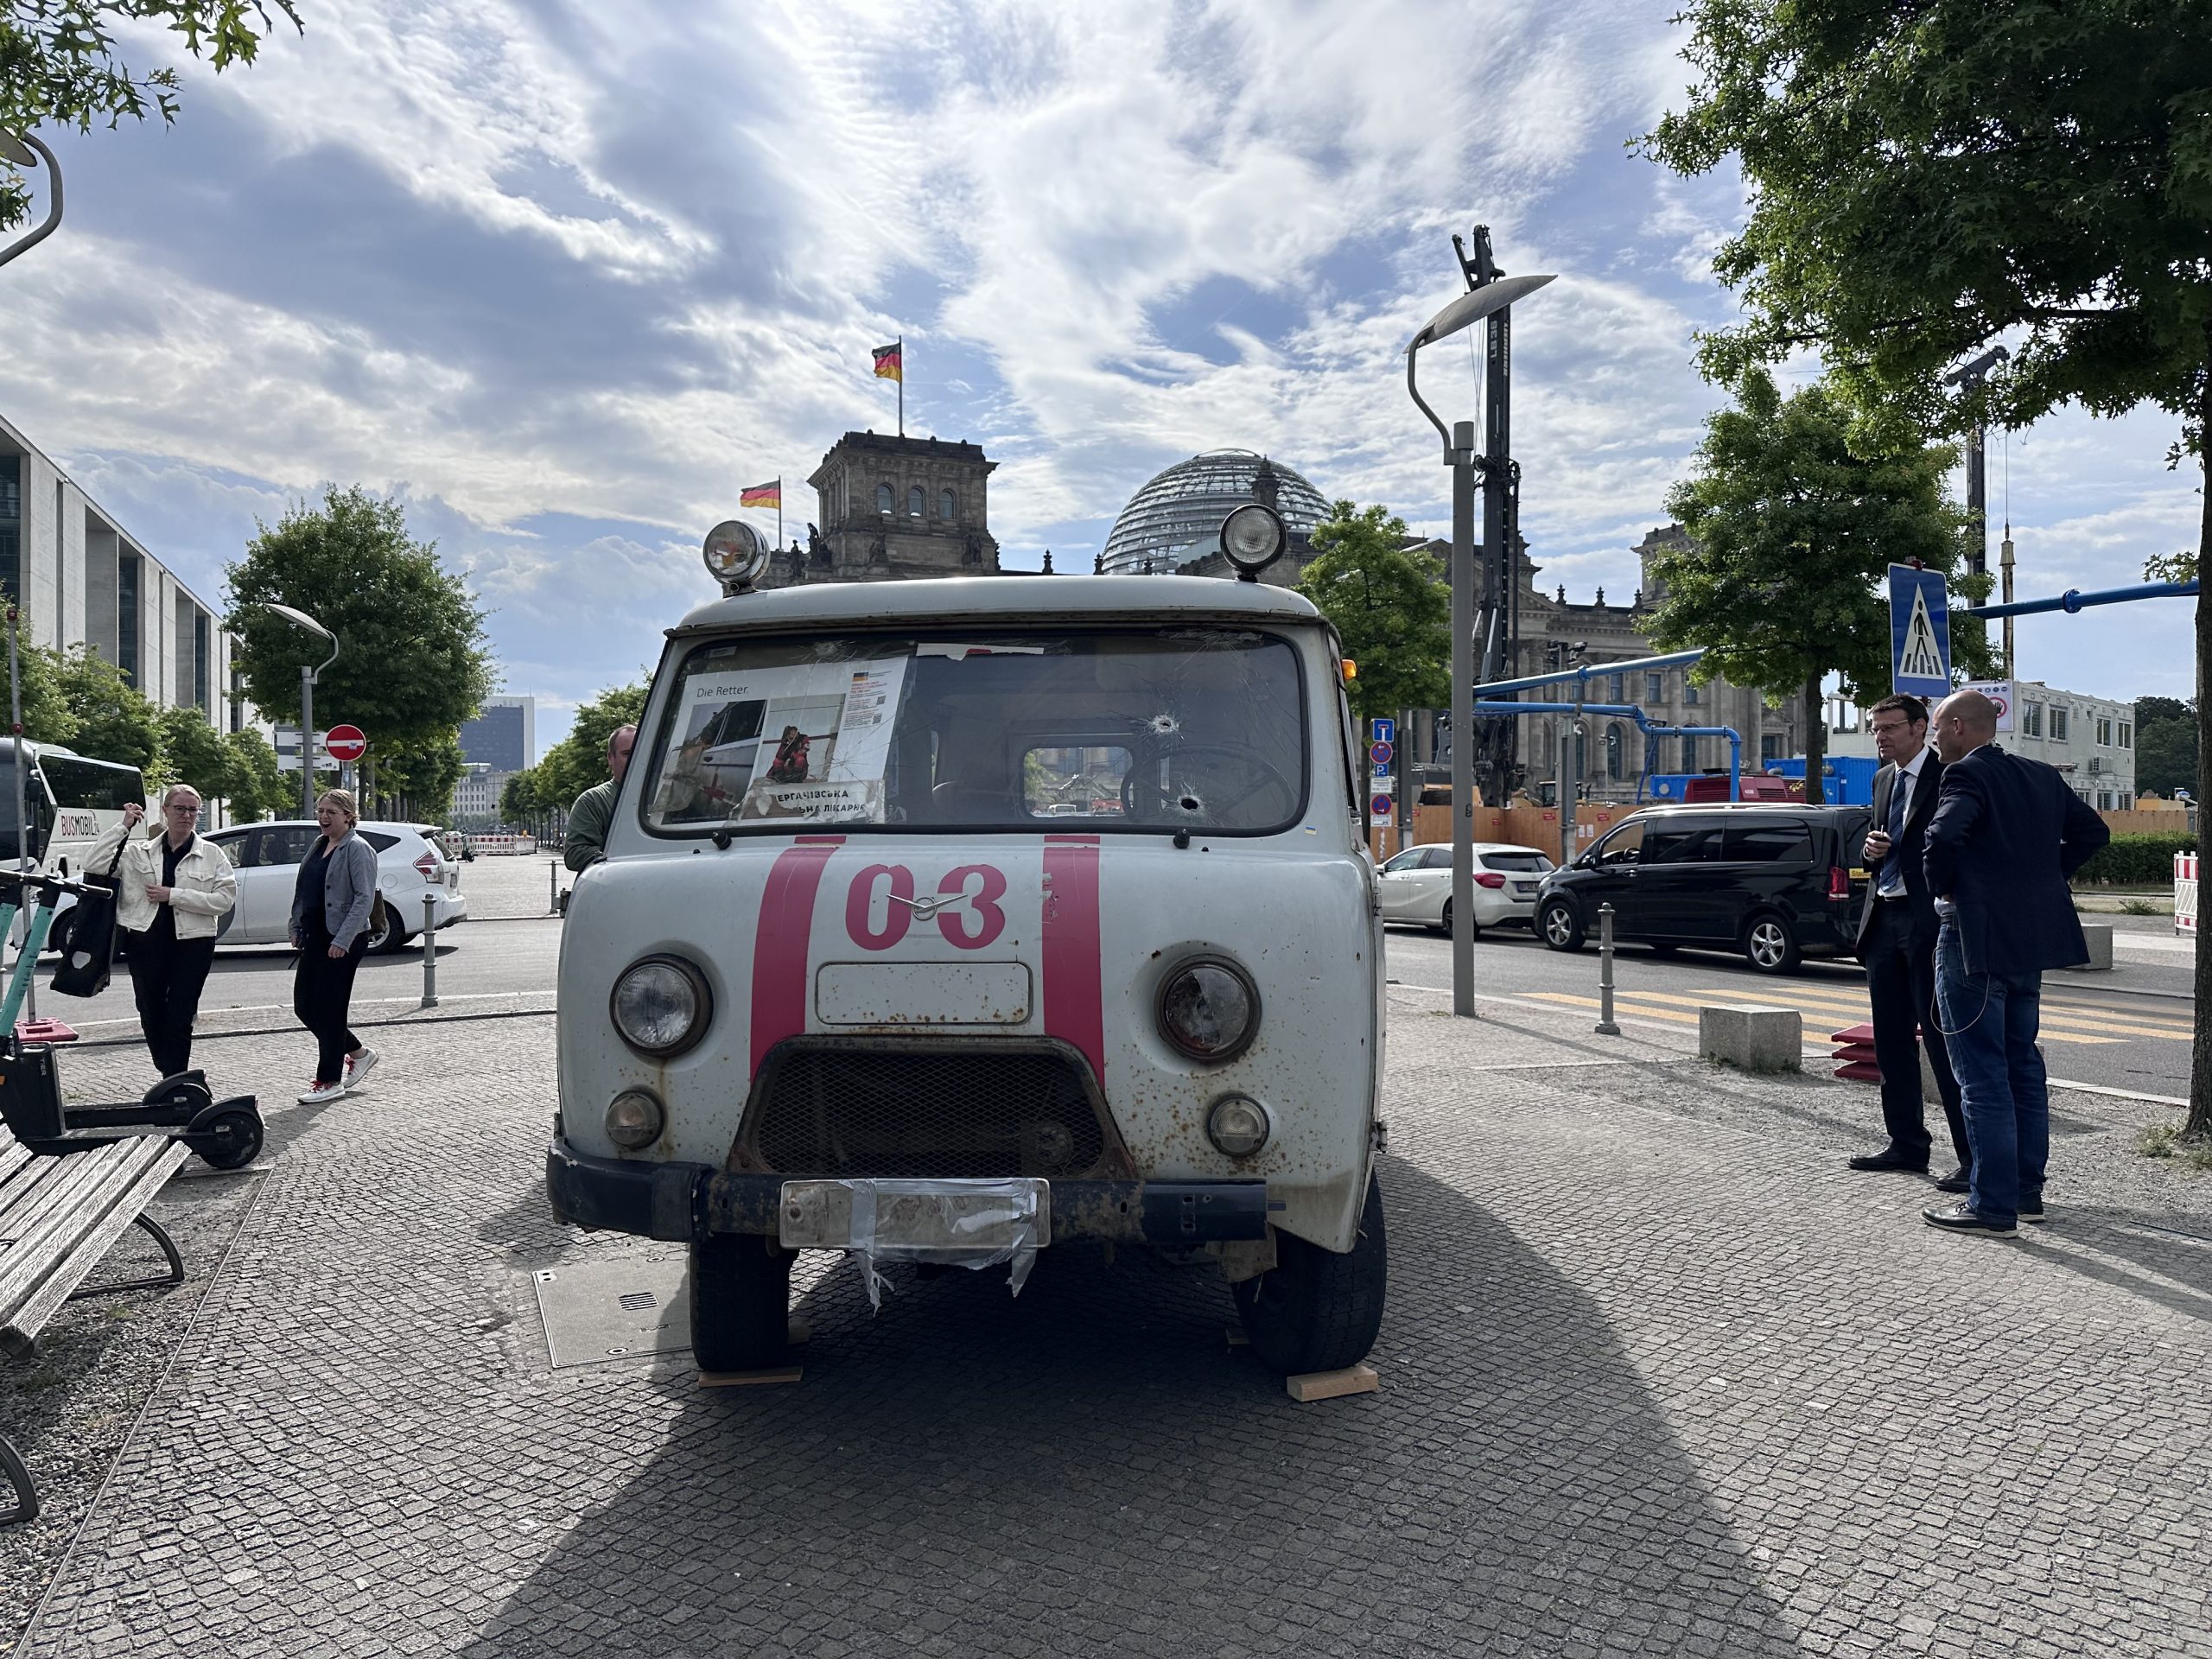 Ukrainischer Rettungswagen in Berlin: Liveblog